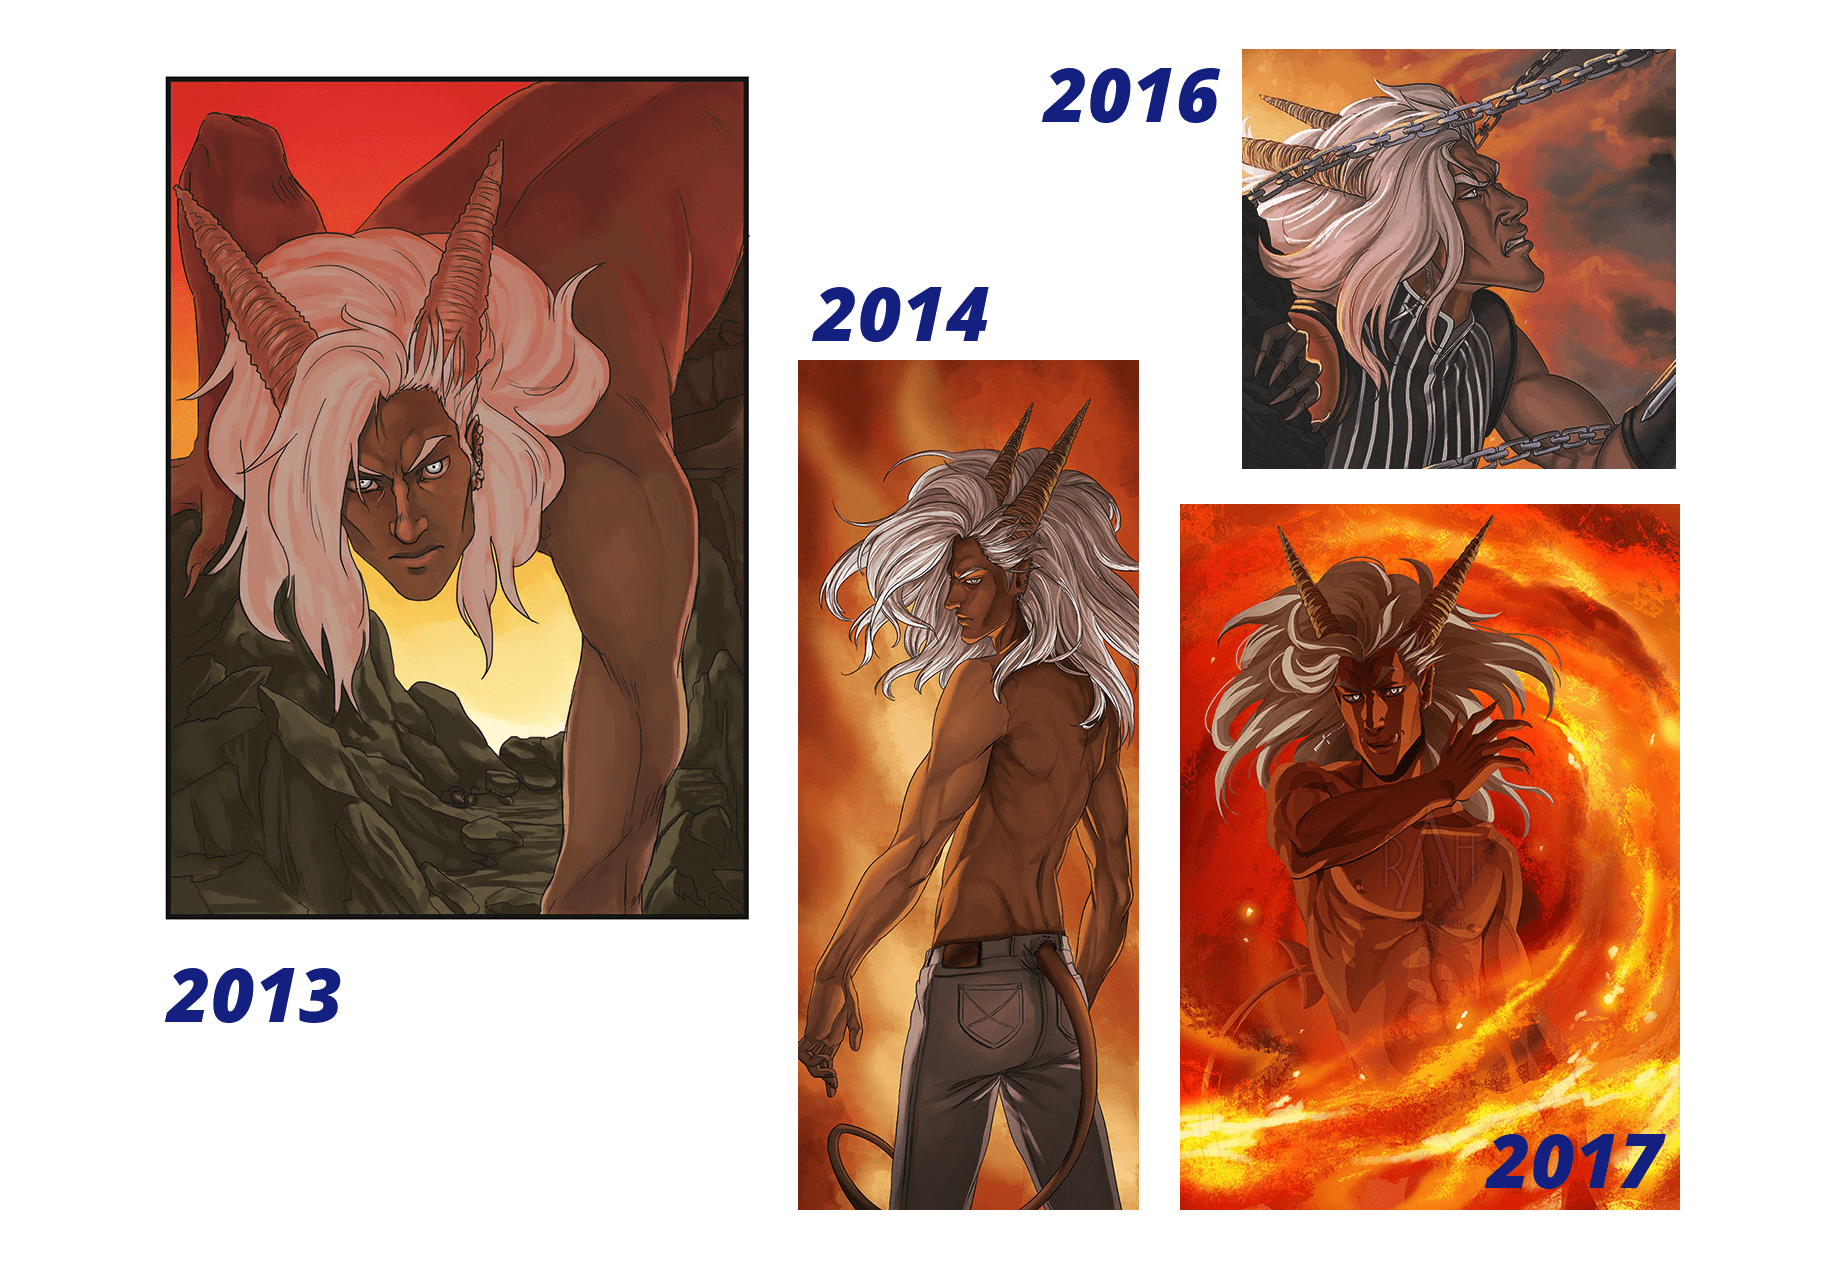 Evolution du style de dessin entre 2013 et 2017